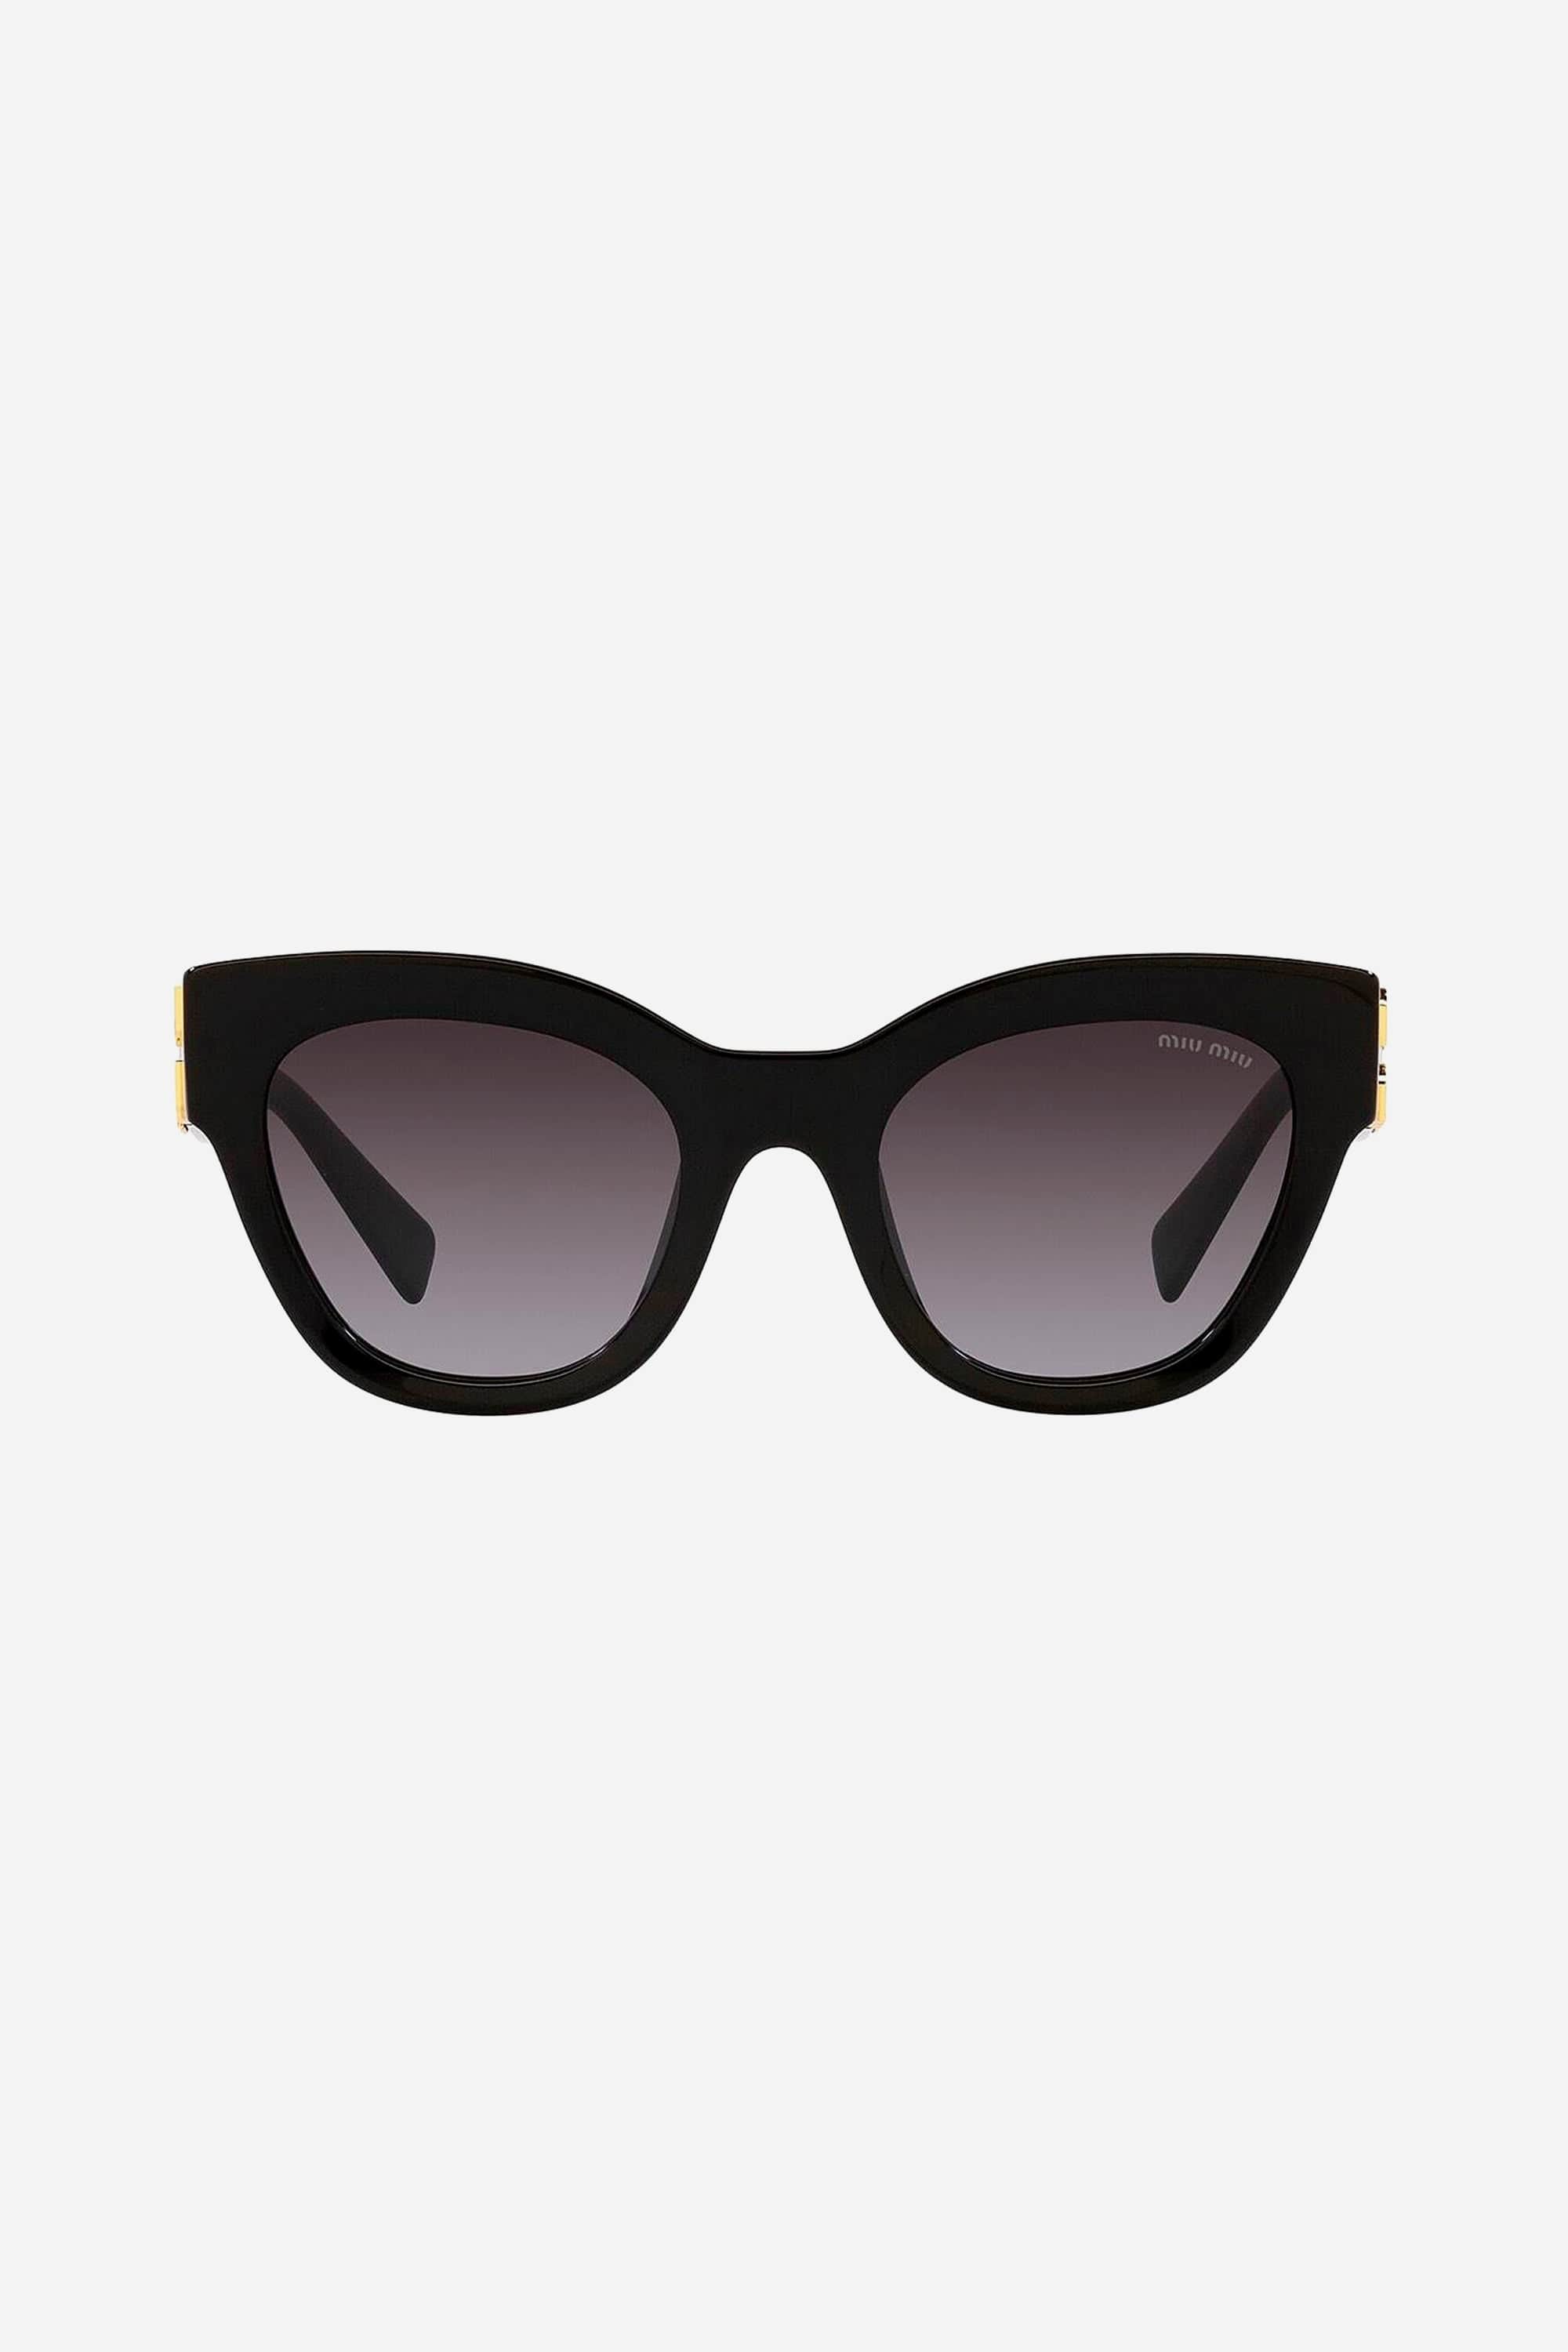 Miu Miu cat-eye black sunglasses - Eyewear Club